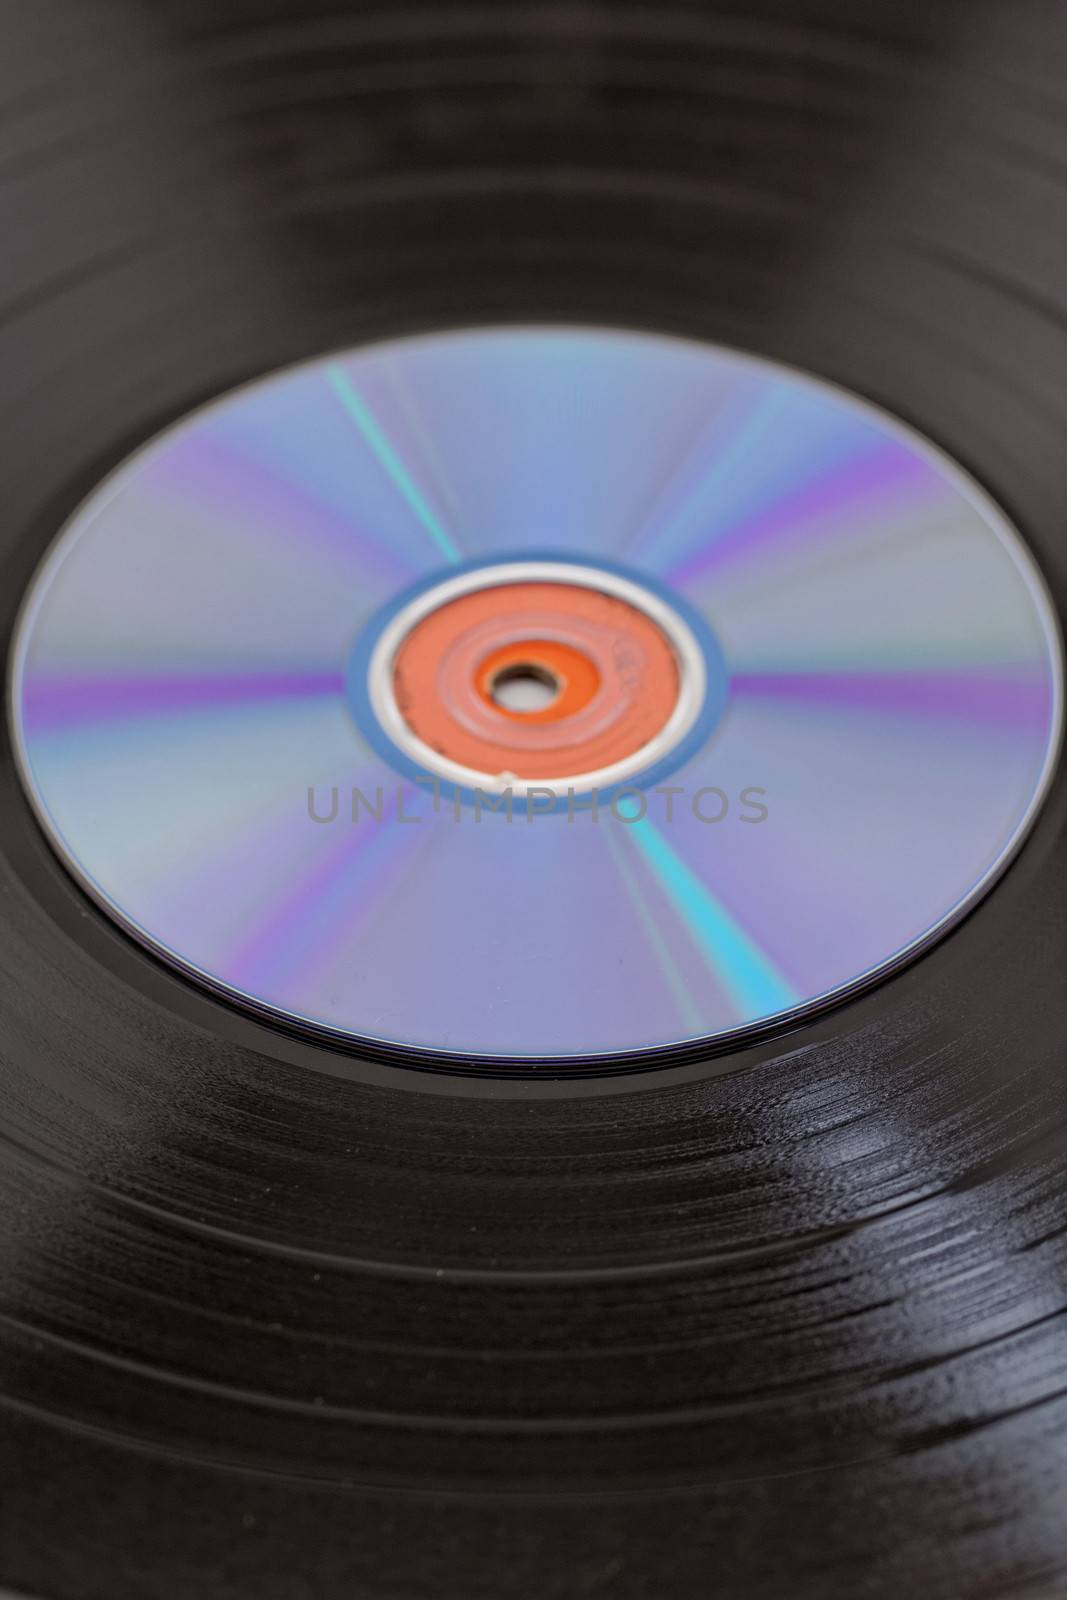 vinyl record and CD by NagyDodo